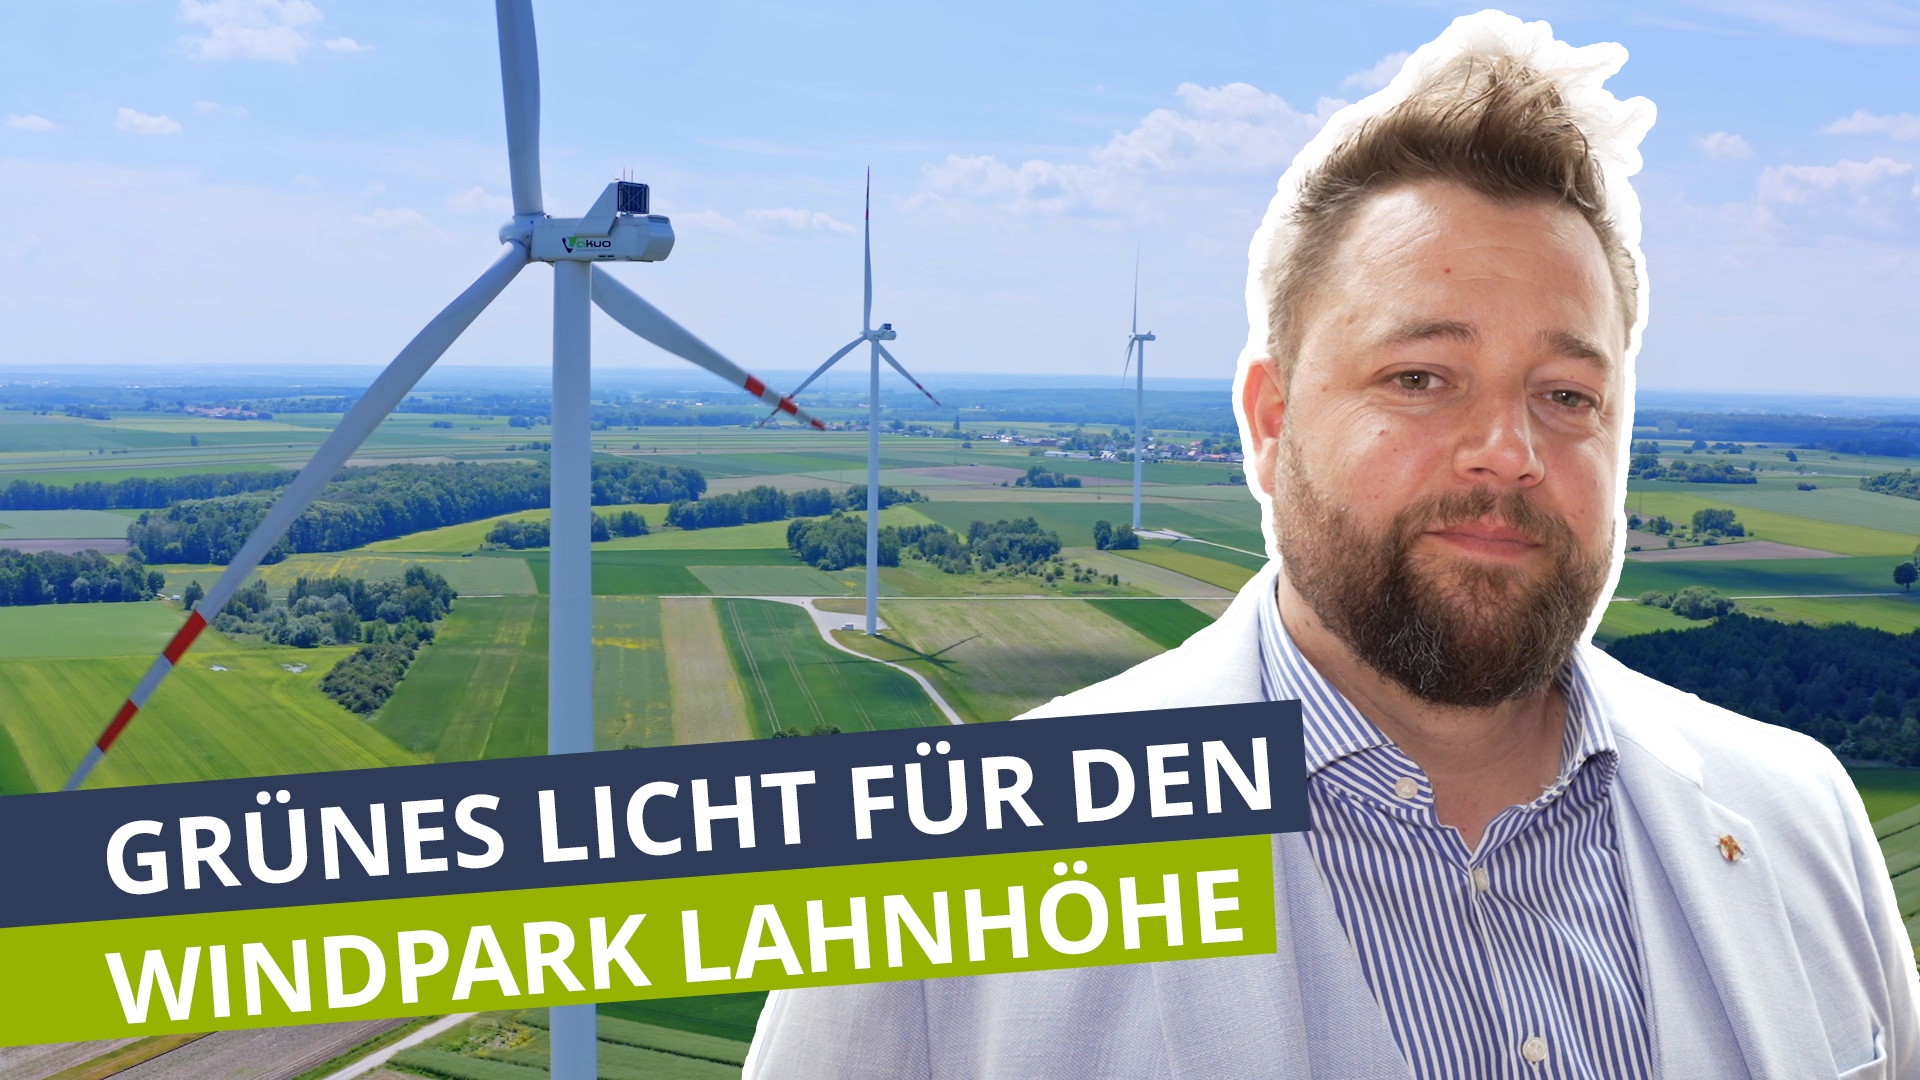 Grünes Licht für den Windpark Lahnhöhe